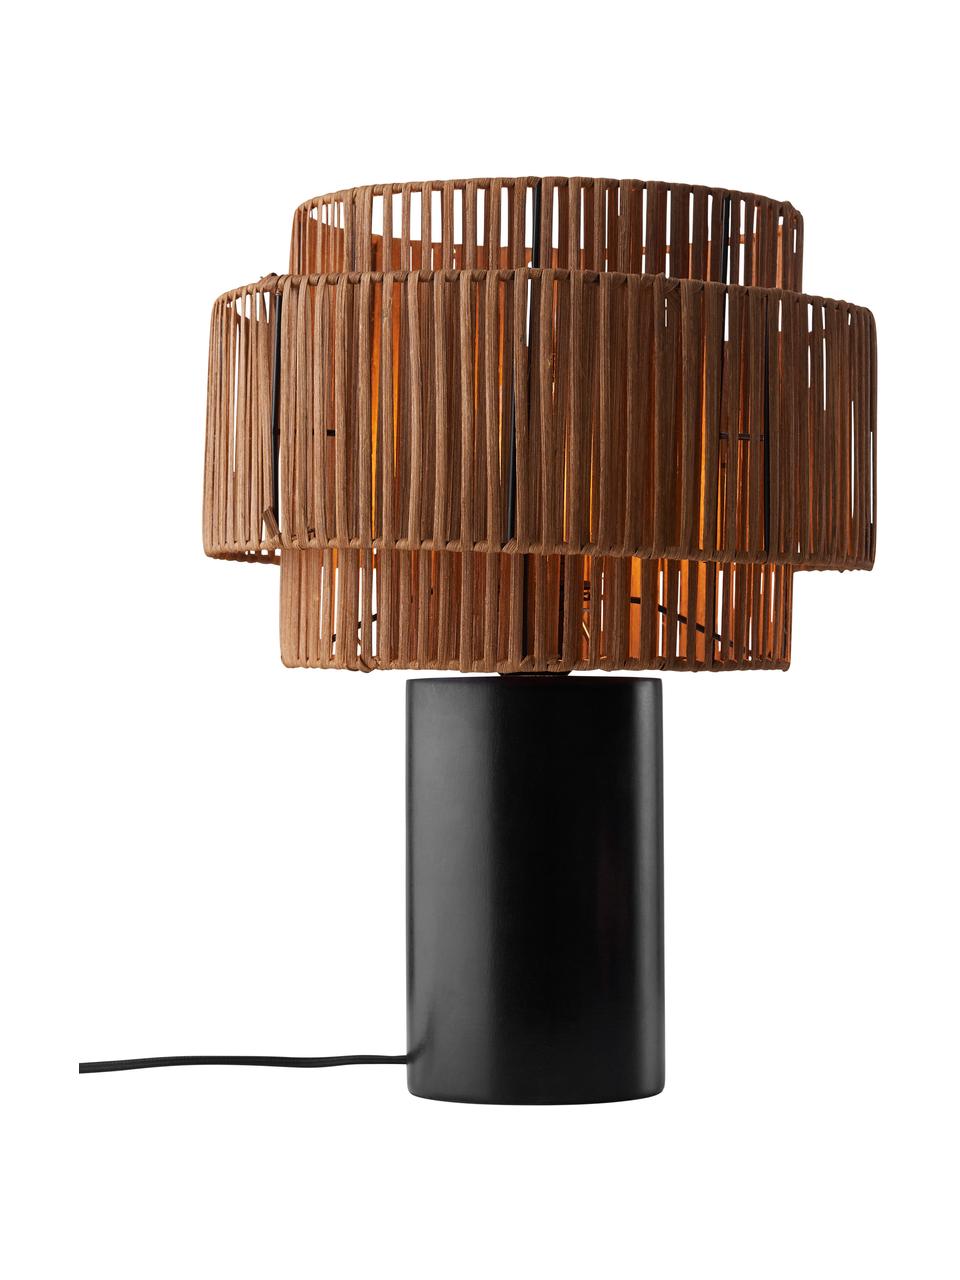 Tischlampe Emelee aus Rattan und Holz, Lampenschirm: Rattan, Lampenfuß: Holz, Braun, Schwarz, Ø 30 x H 41 cm